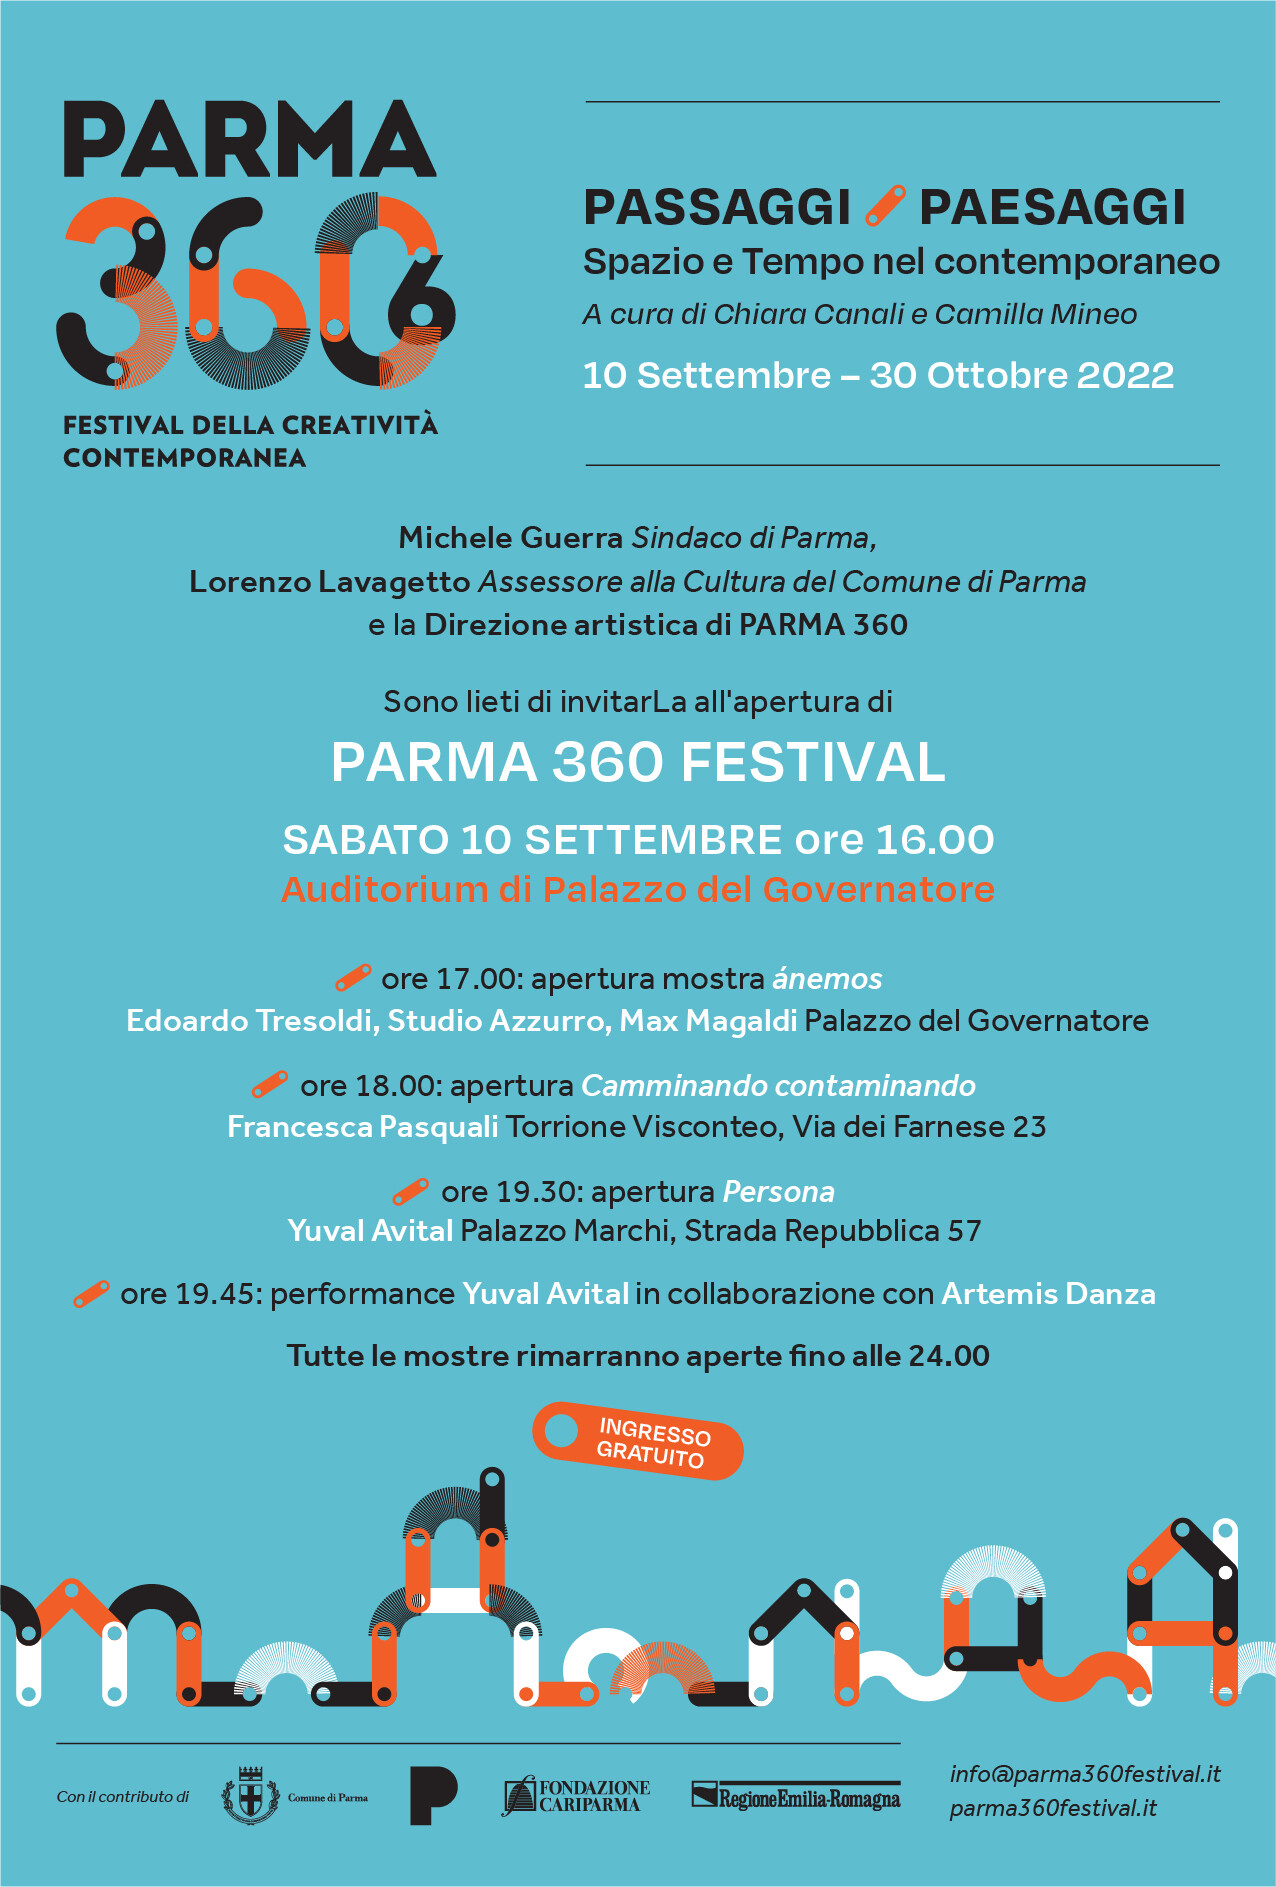 PARMA 360 Festival della creatività contemporanea     VI Edizione  PASSAGGI / PAESAGGI  Spazio e Tempo nel contemporaneo